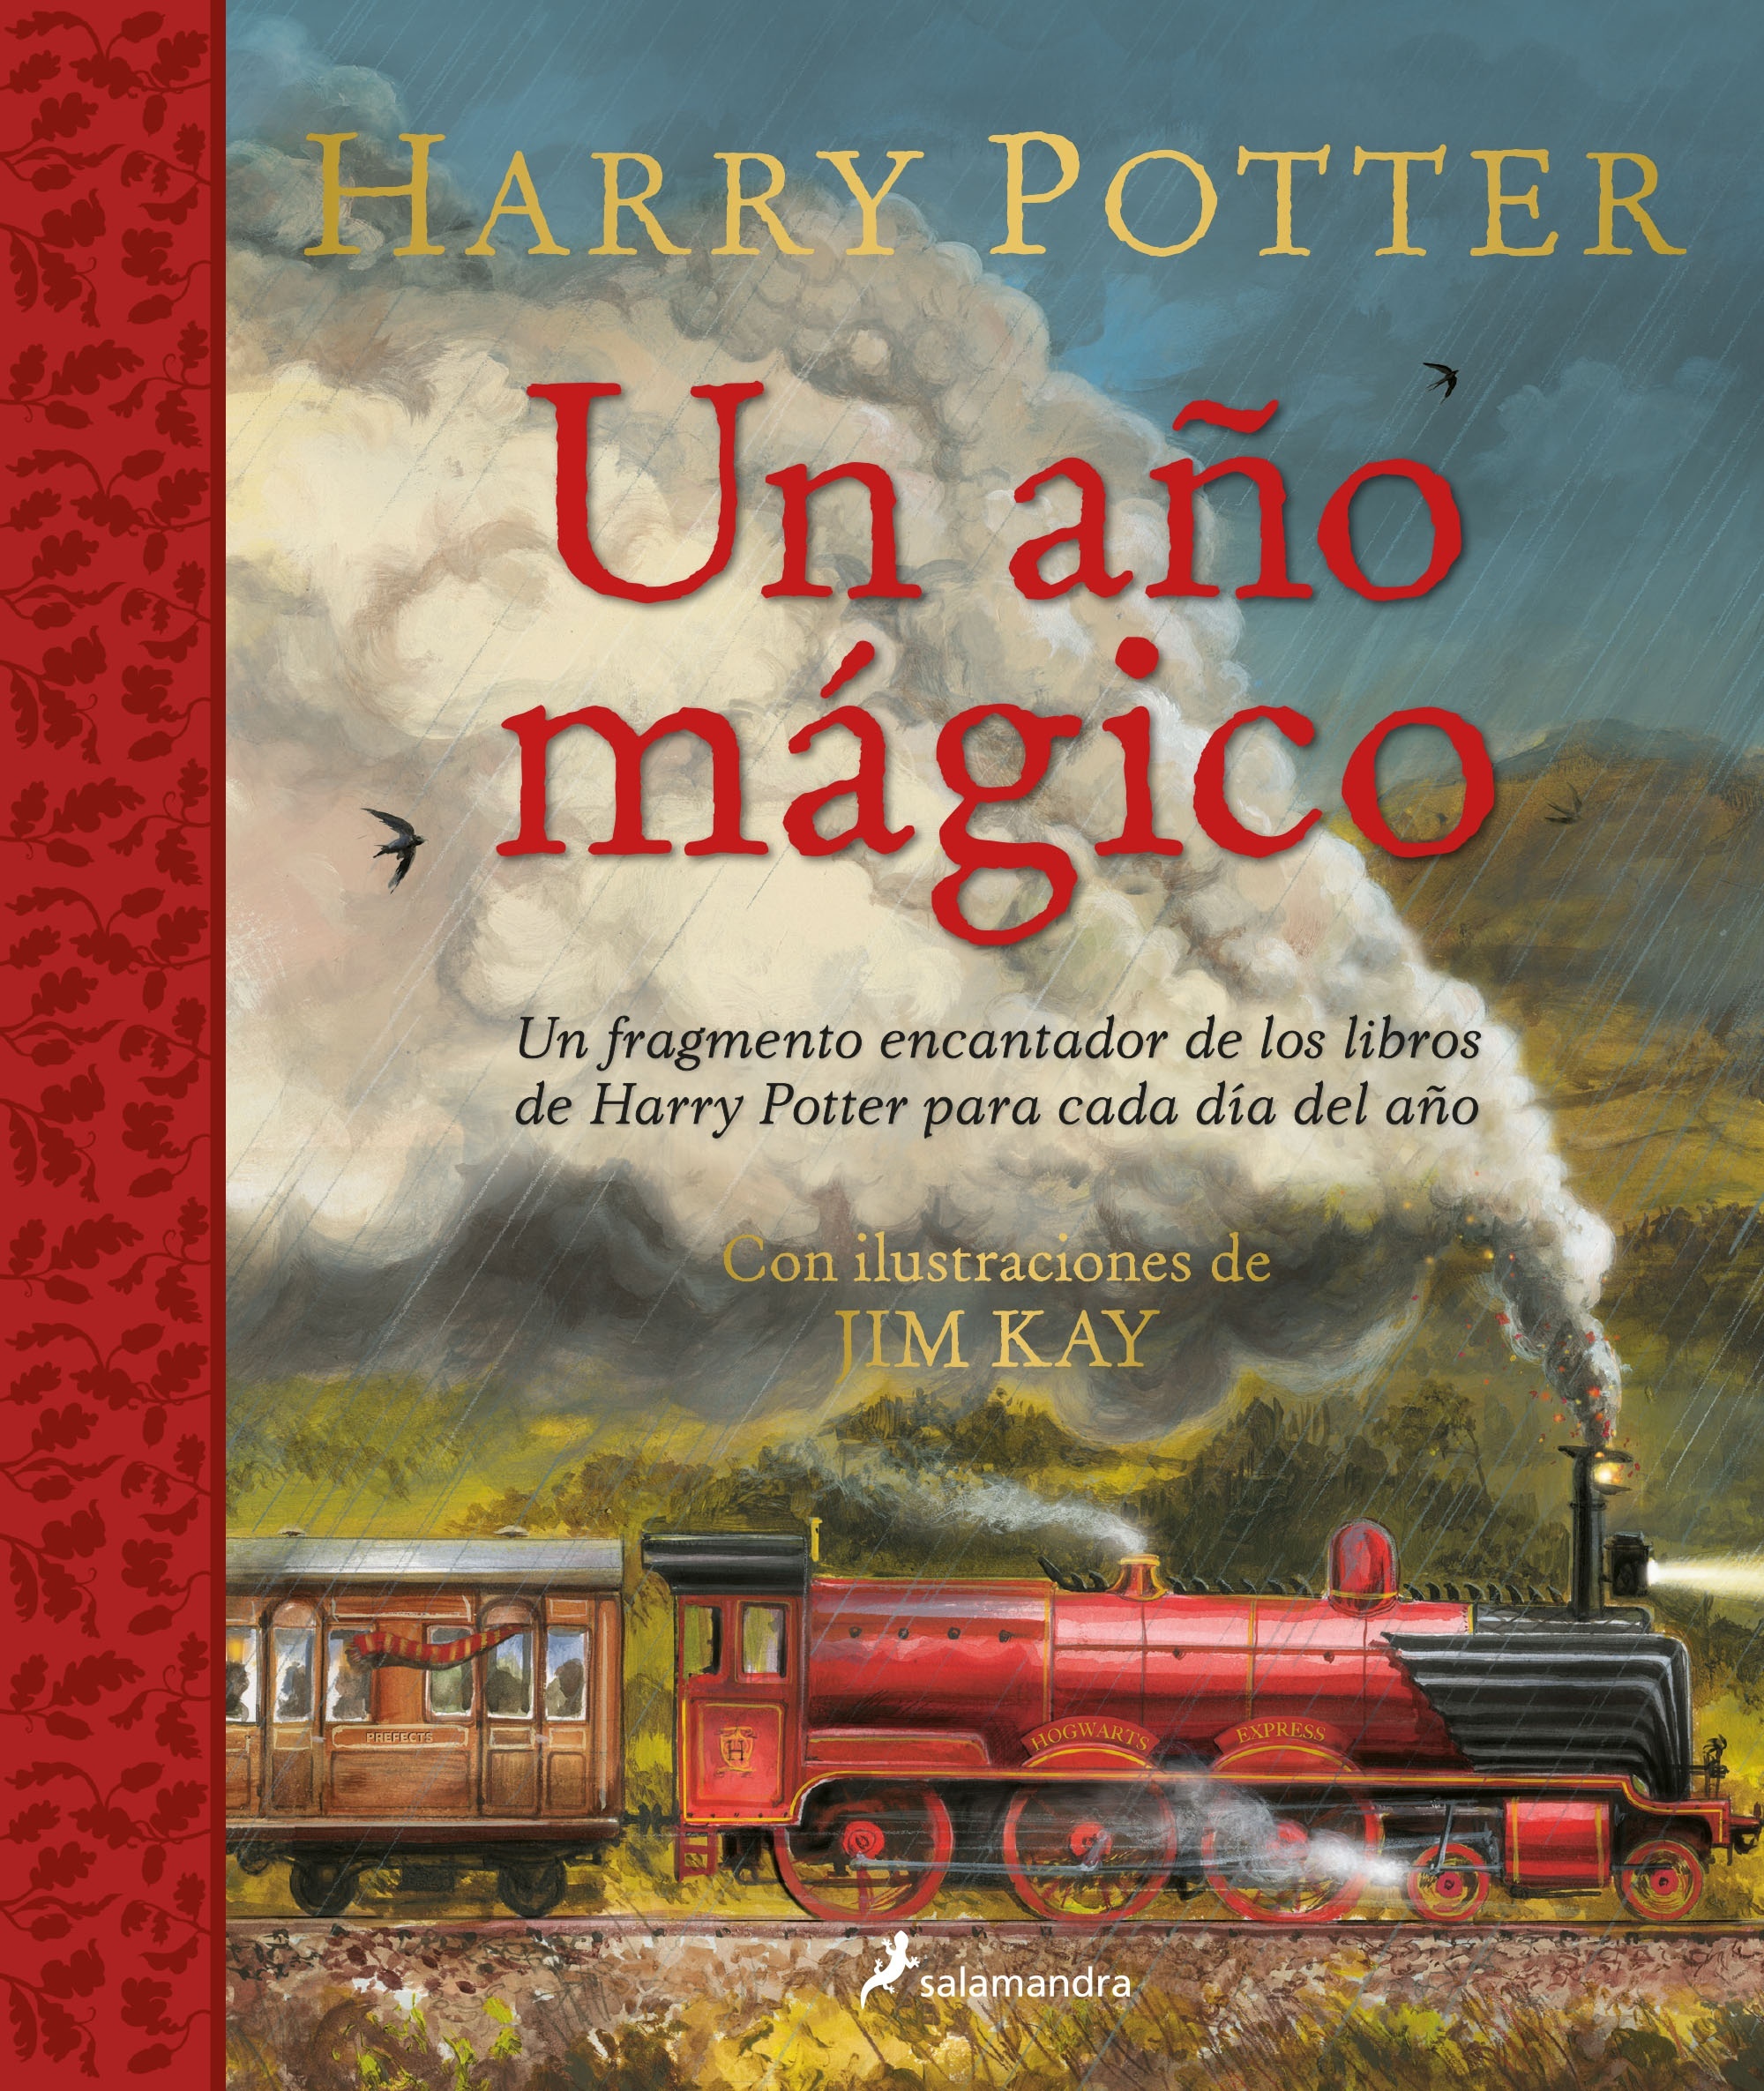 Harry Potter: Un año mágico. 